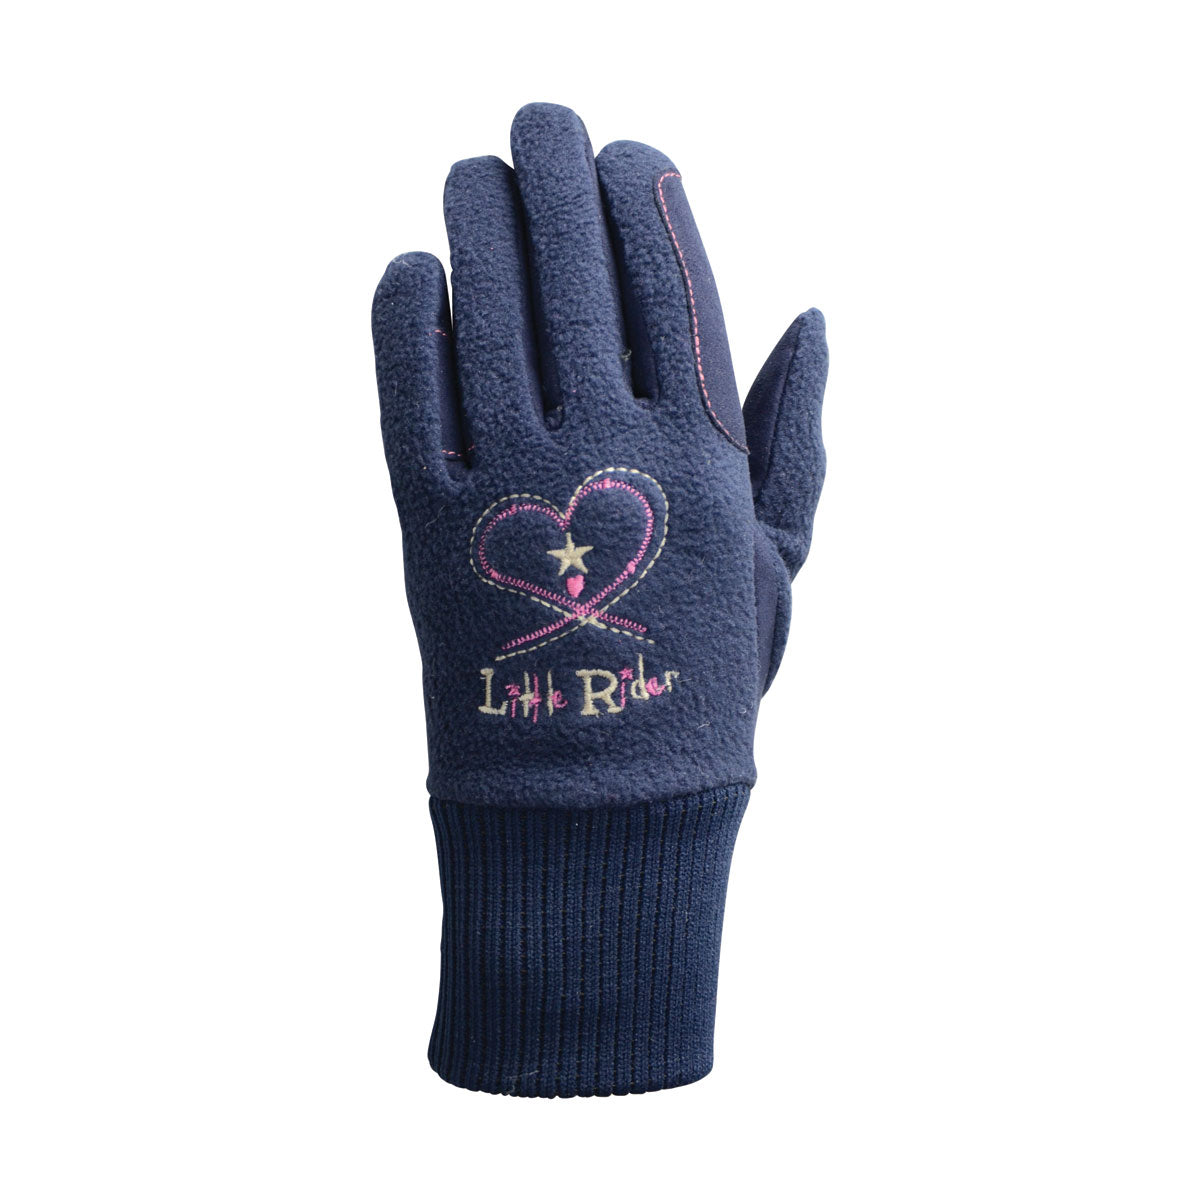 Riding Star Children's Winter Gloves